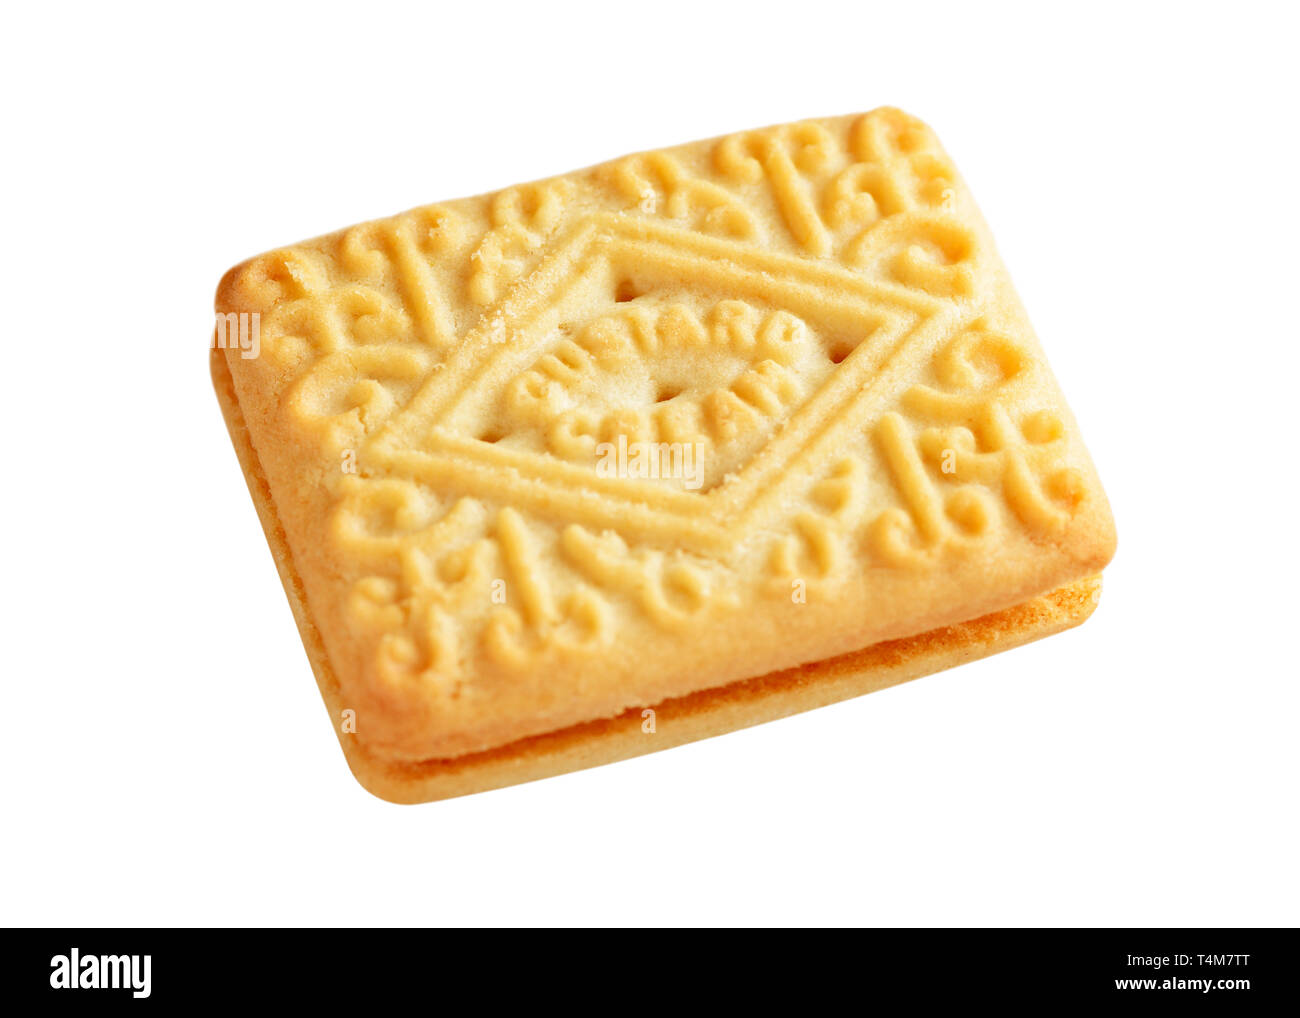 Crema pasticcera Biscuit, tagliate Foto Stock